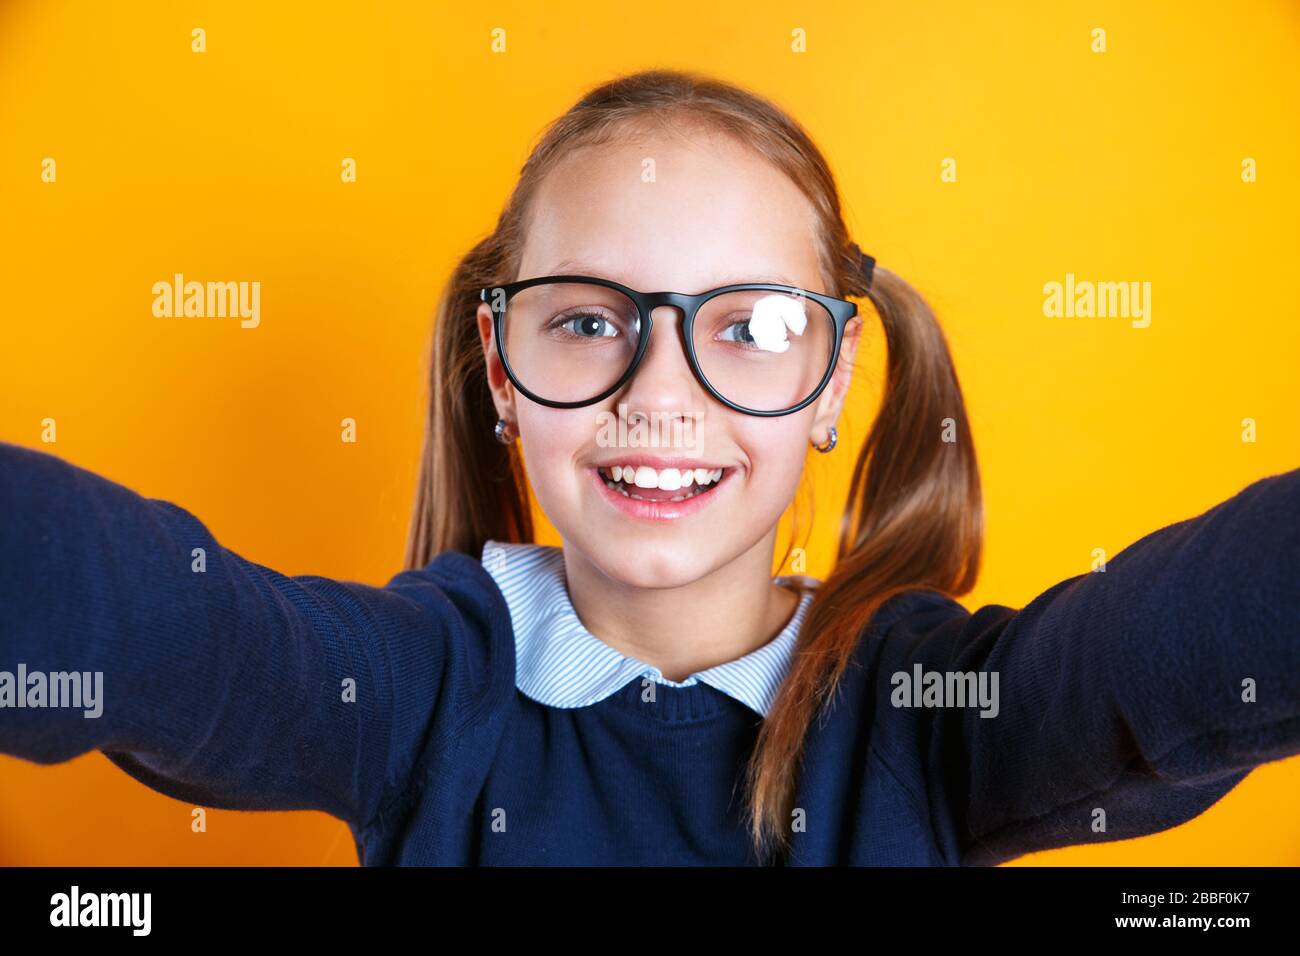 Nahaufnahme des kleinen 12-13-jährigen Mädchens in Brille, das selfie auf dem Handy auf gelbem Hintergrund macht. Stockfoto